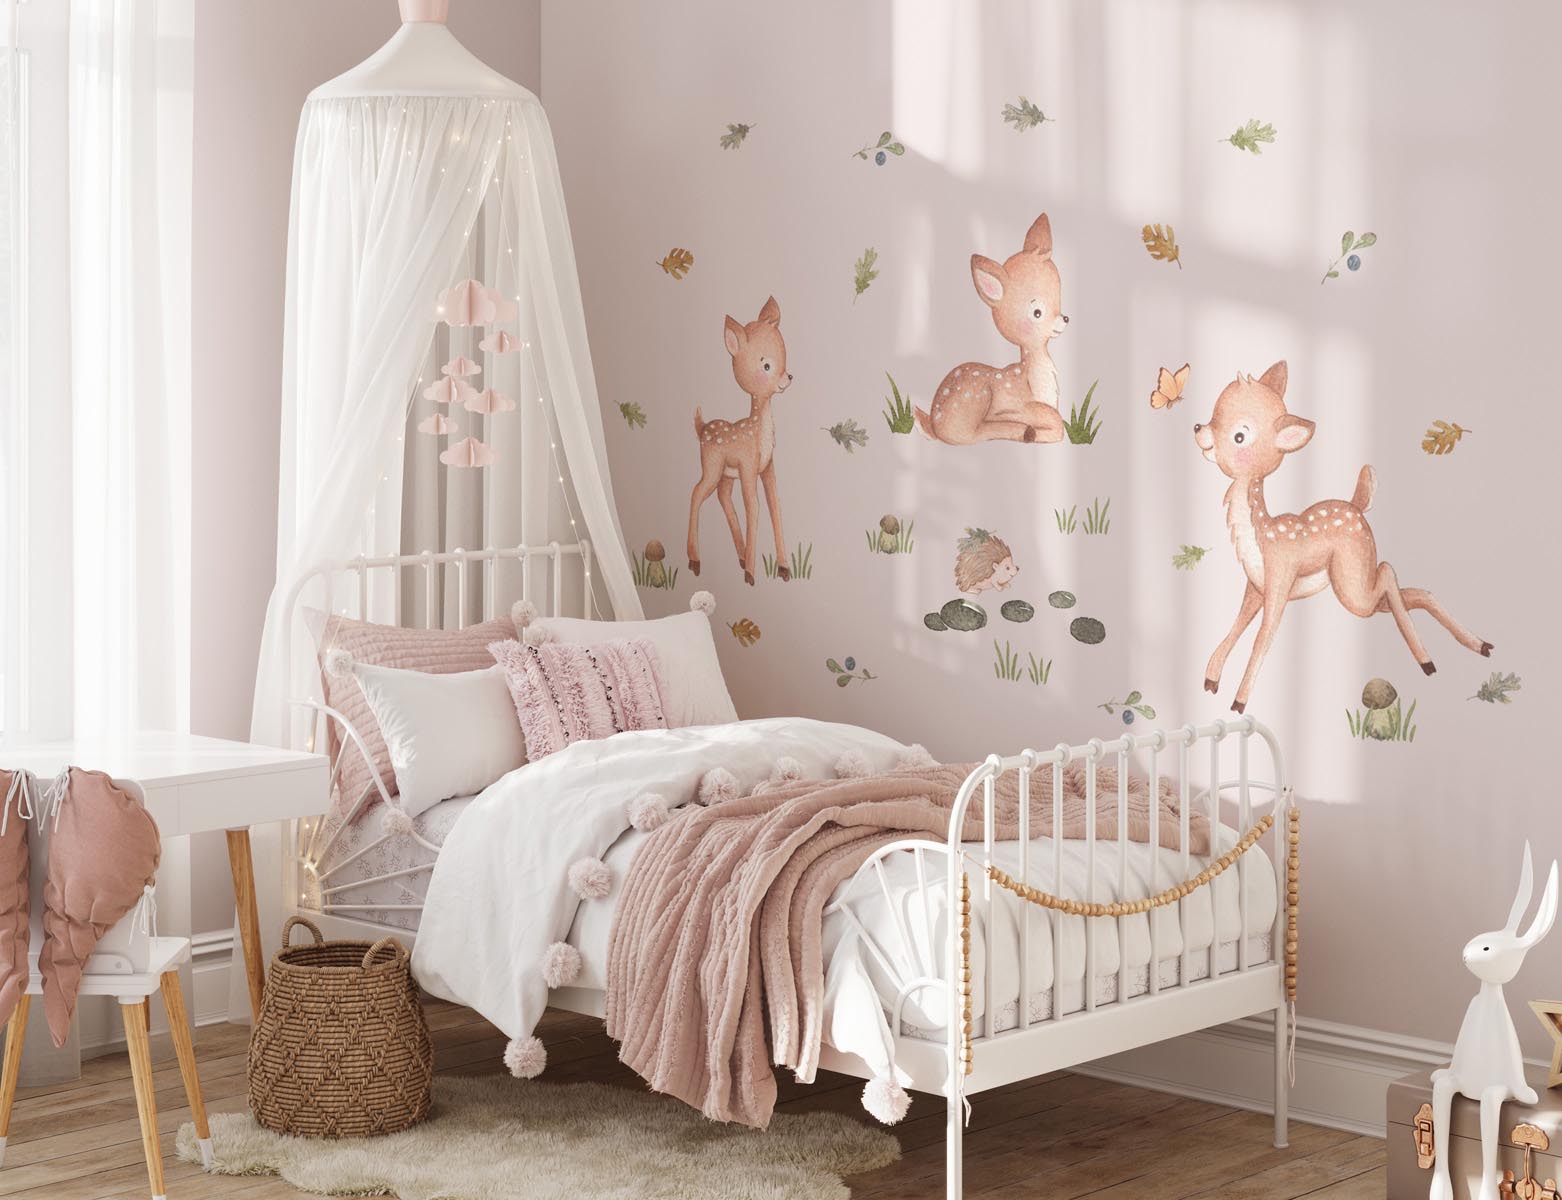 Dekoracje do pokoju dziecka - naklejki na ścianę dla dzieci. Zwierzęta leśne, sarenki.